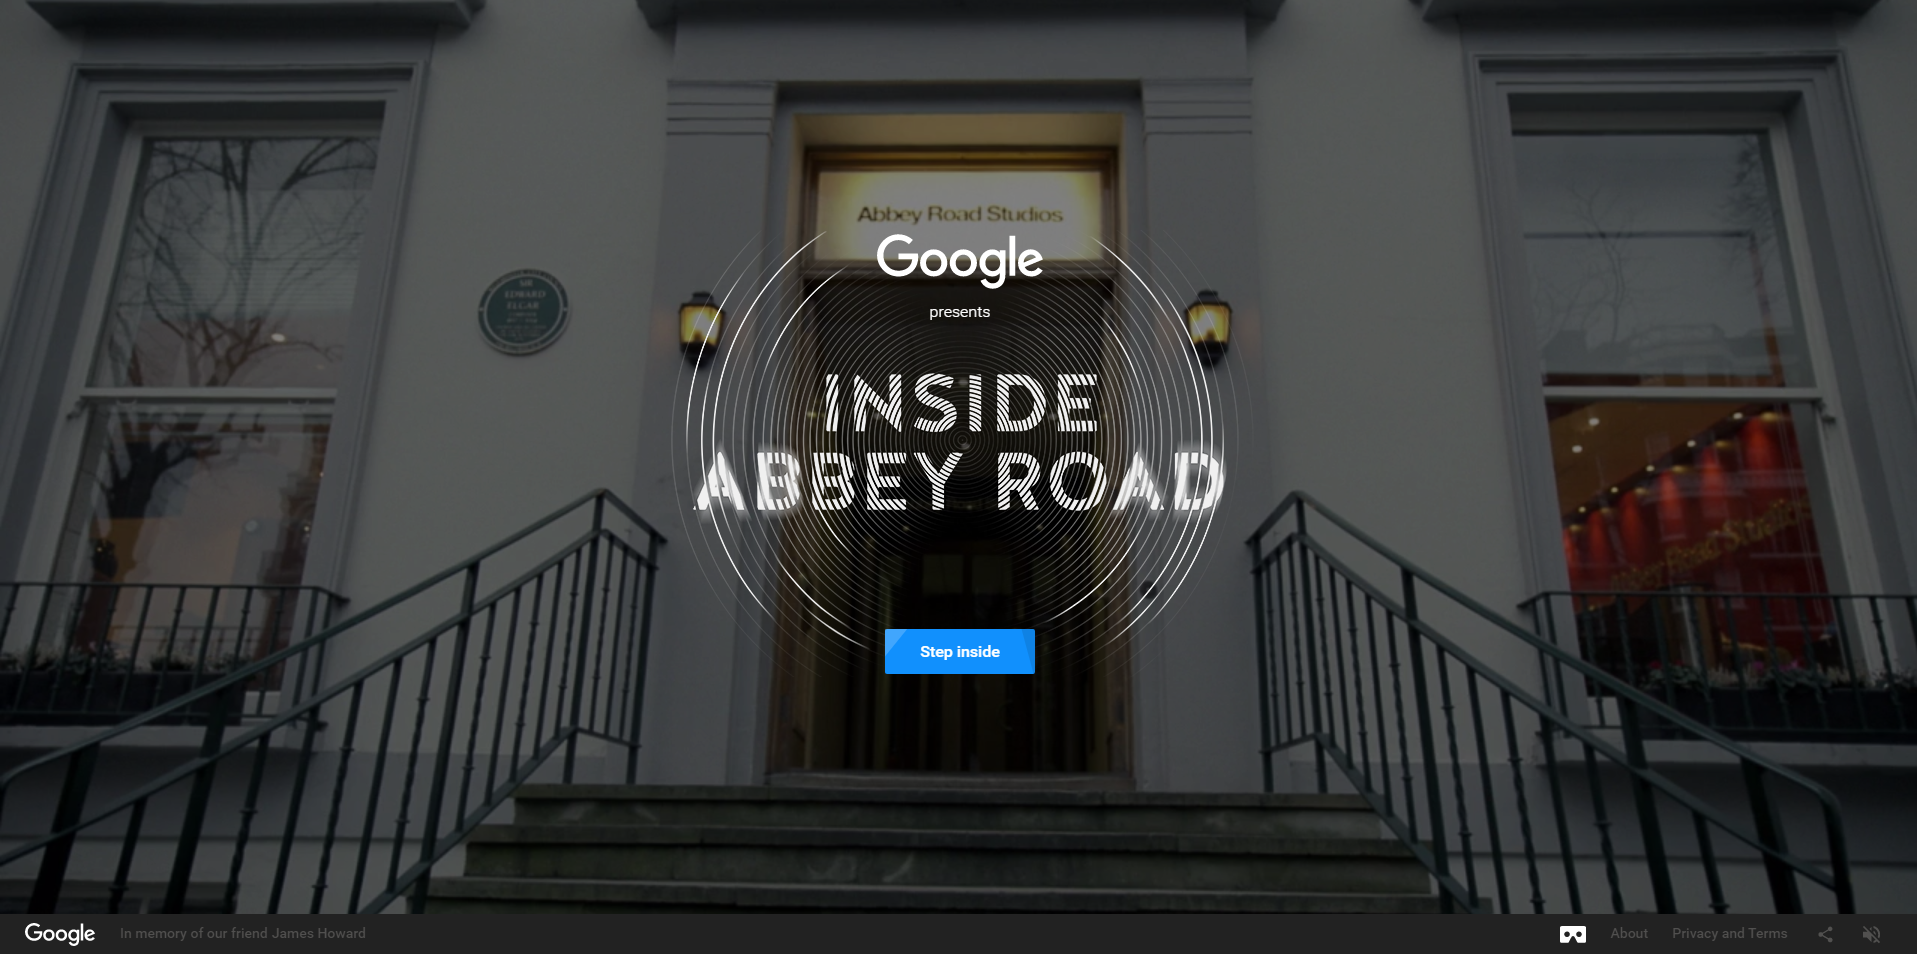 inside-abbey-road